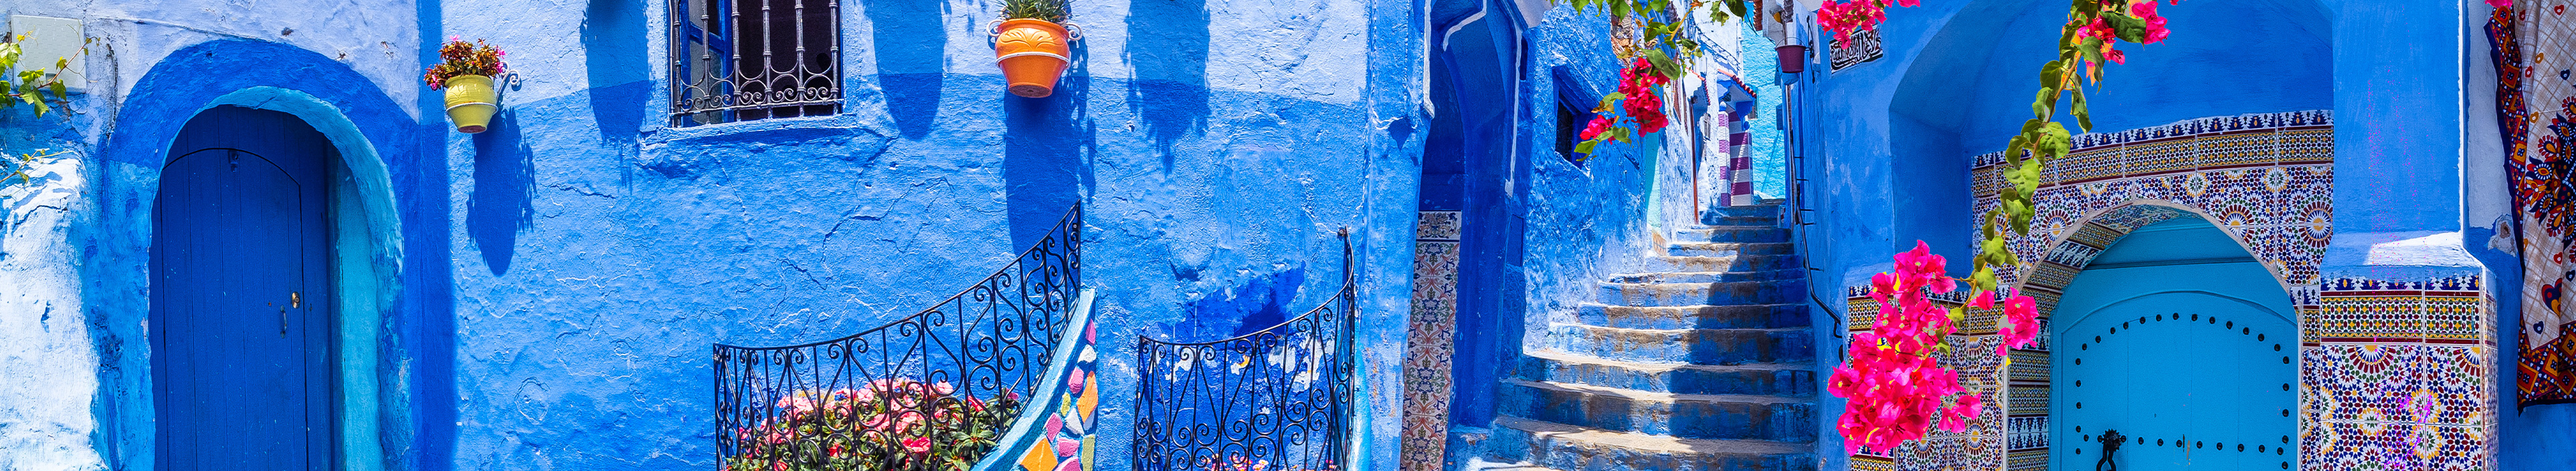 Straße mit blauen Fliesen und Treppe in Marokko